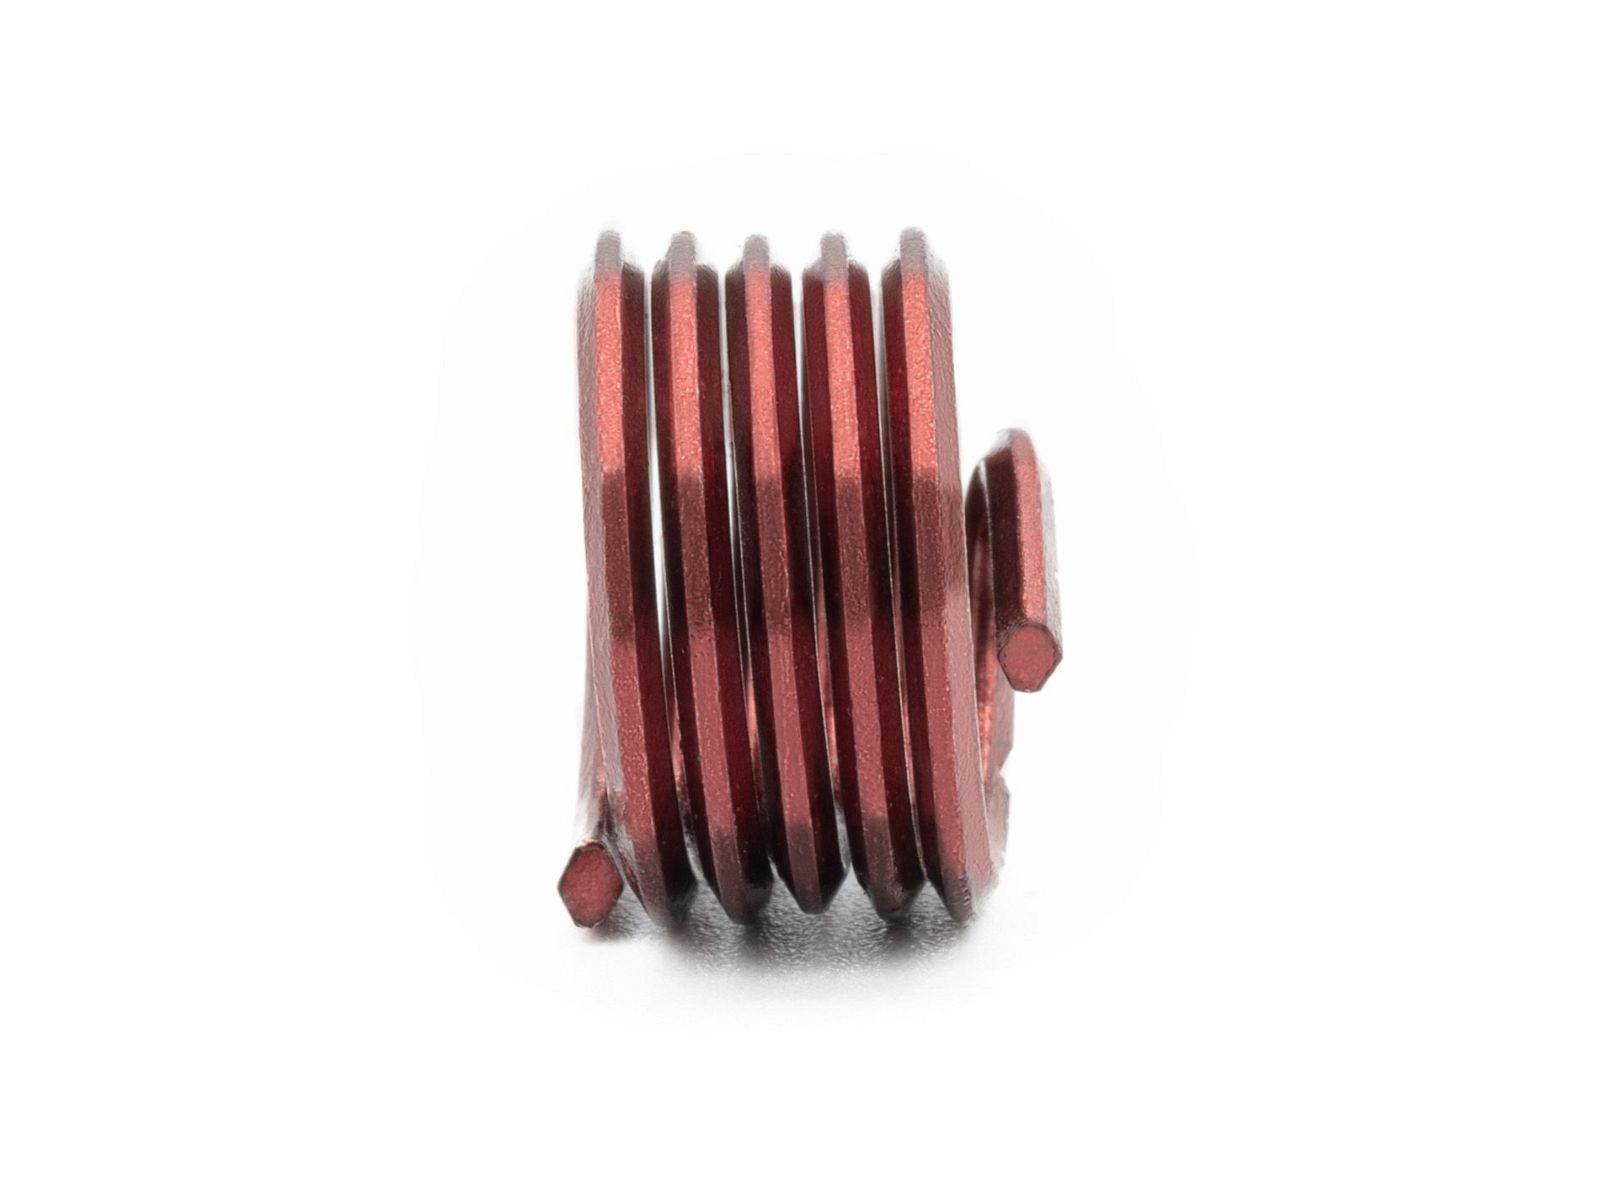 BaerCoil Wire Thread Inserts M 12 x 1.75 - 1.0 D (12 mm) - screw grip (screw locking) - 100 pcs.